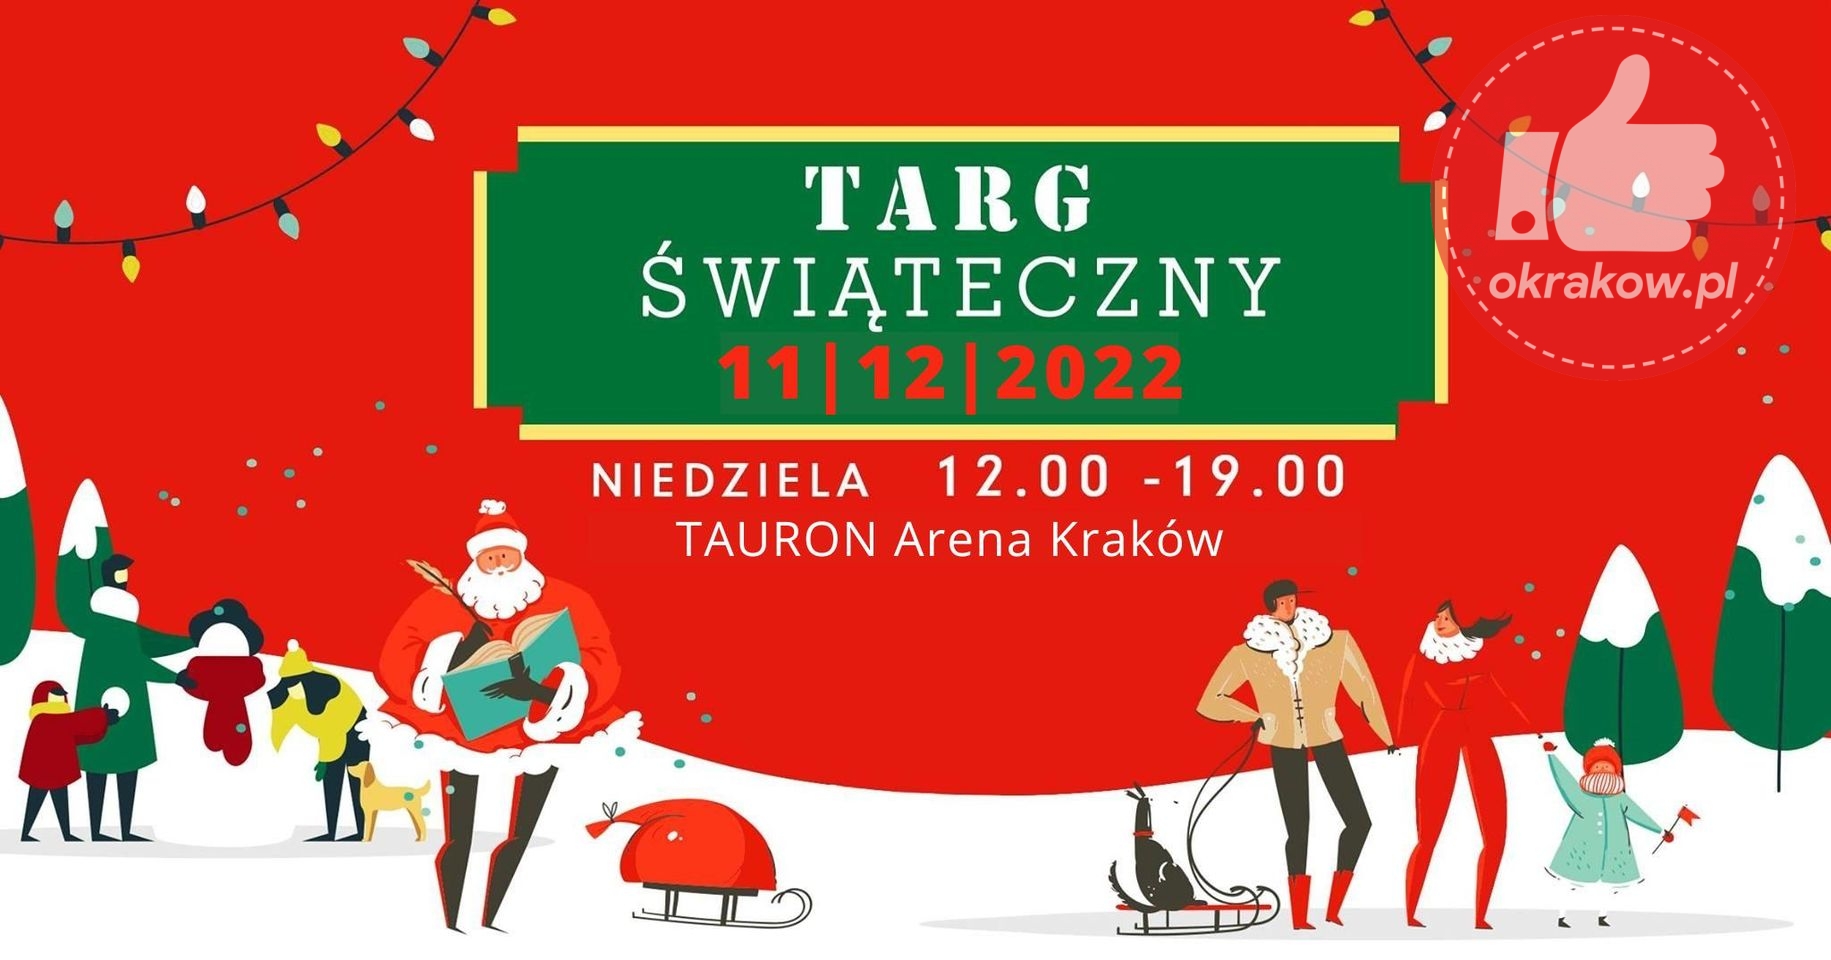 krakow targ sw - Już 11 grudnia odbędzie się Targ Świąteczny w Krakowie!